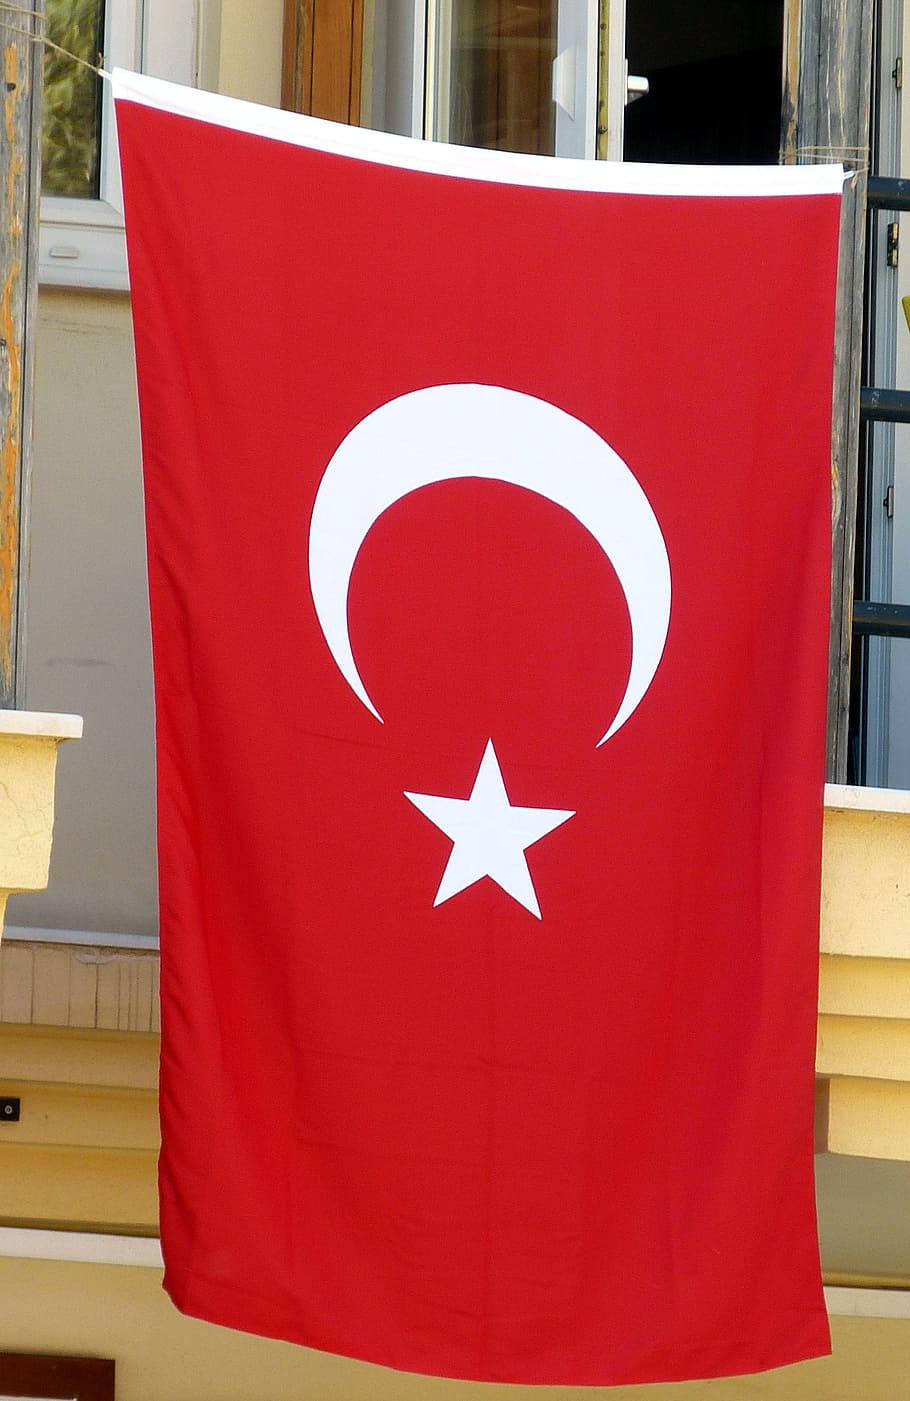 Turkey, Flag, Turkish, Crescent, Crescent, Star, red, sickle